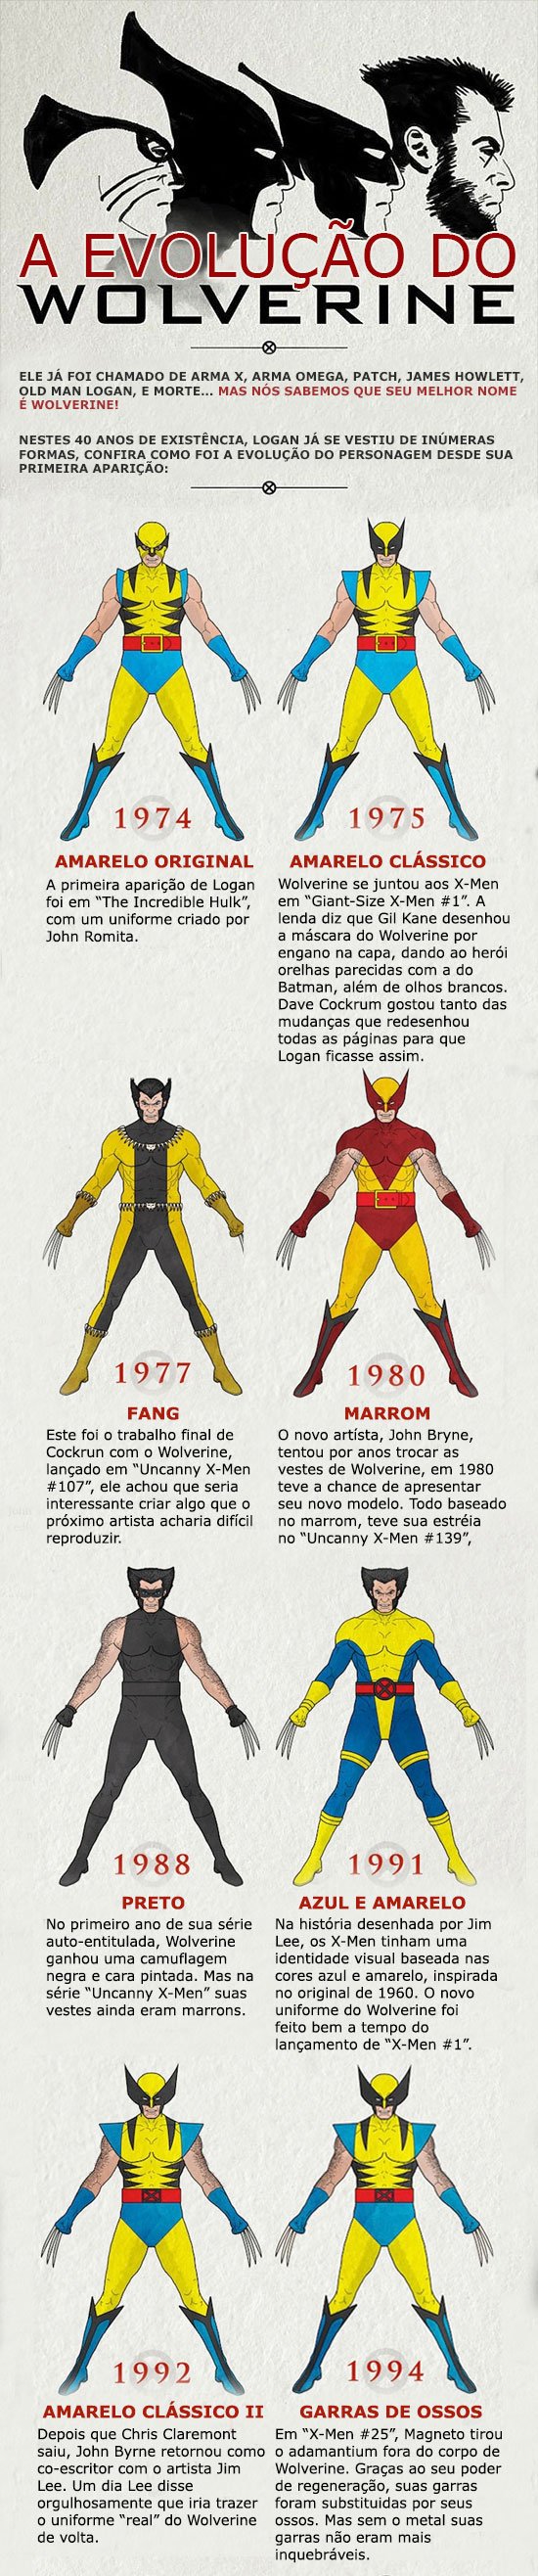 A evolução do Wolverine (1)